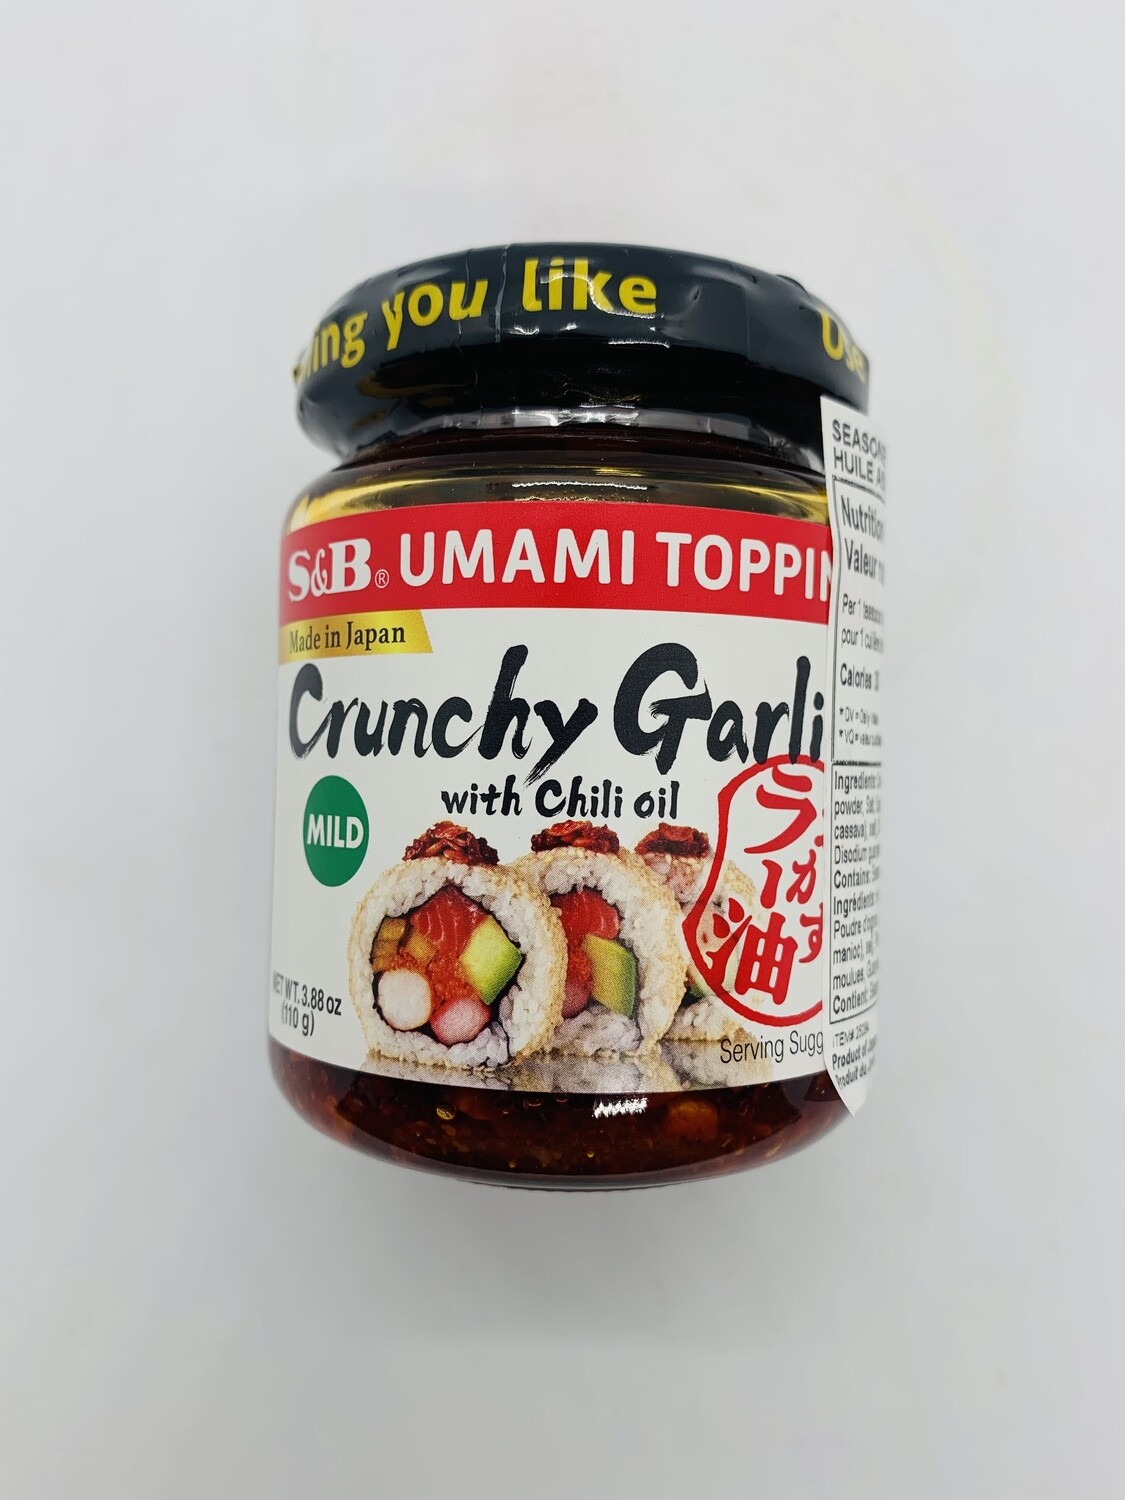 S&B Crunchy Garlic Rayu